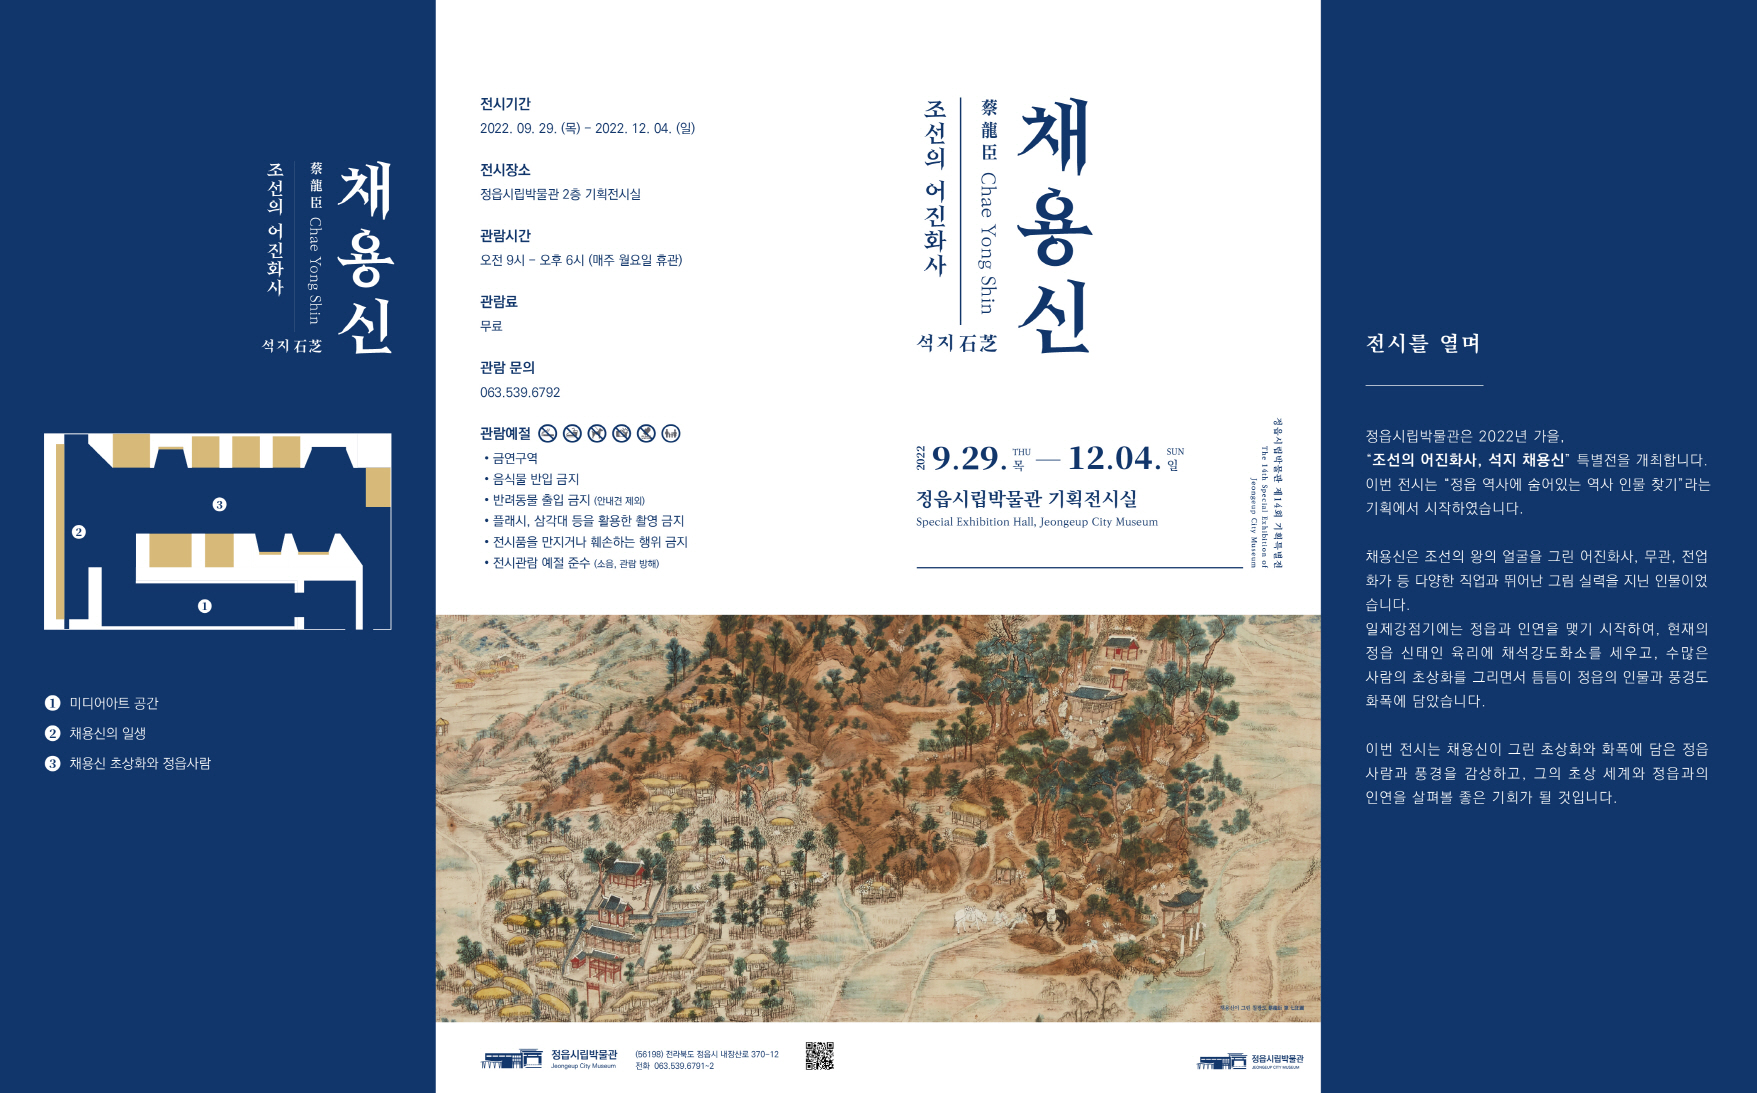 제14회 기획특별전 조선의 어진화사, 석지 채용신